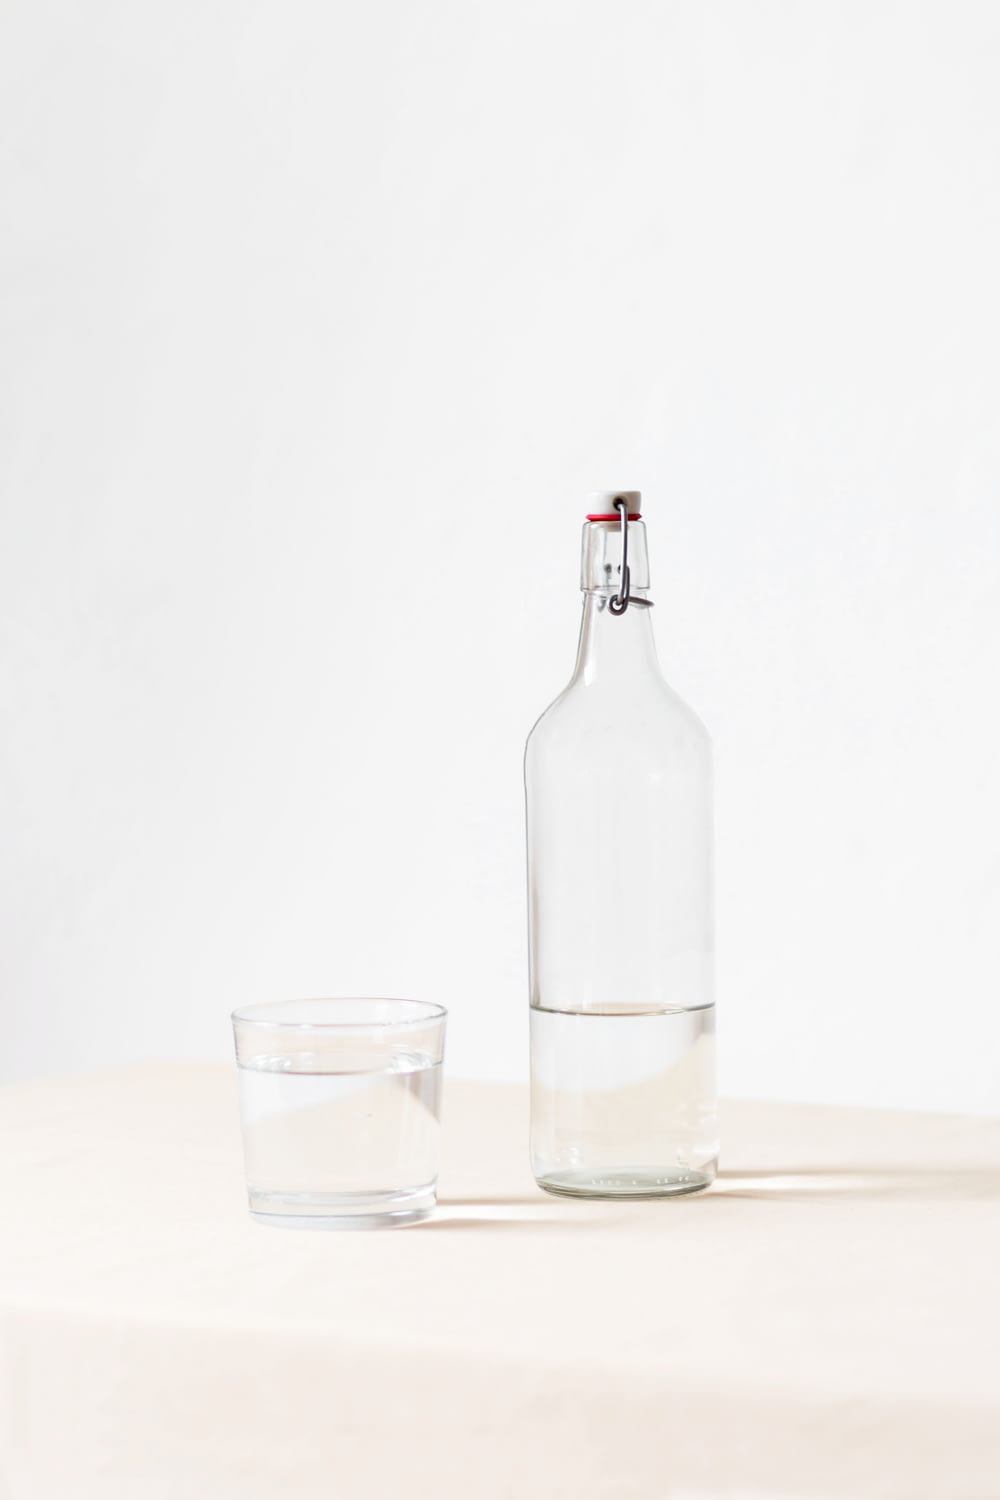 rocks glass beside half empty bottle on white surface